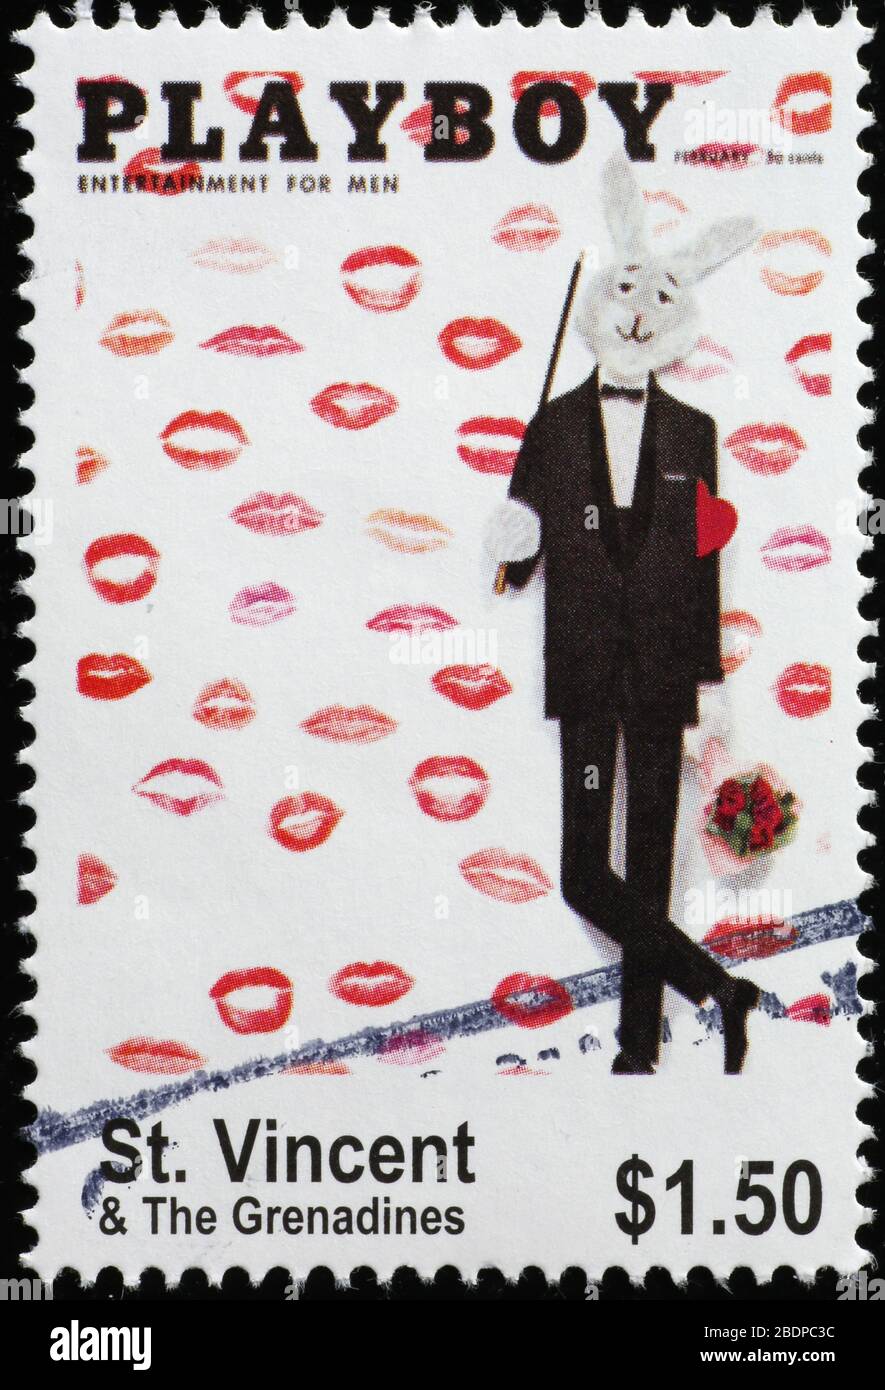 Couverture de l'ancien magazine Playboy sur timbre-poste Banque D'Images